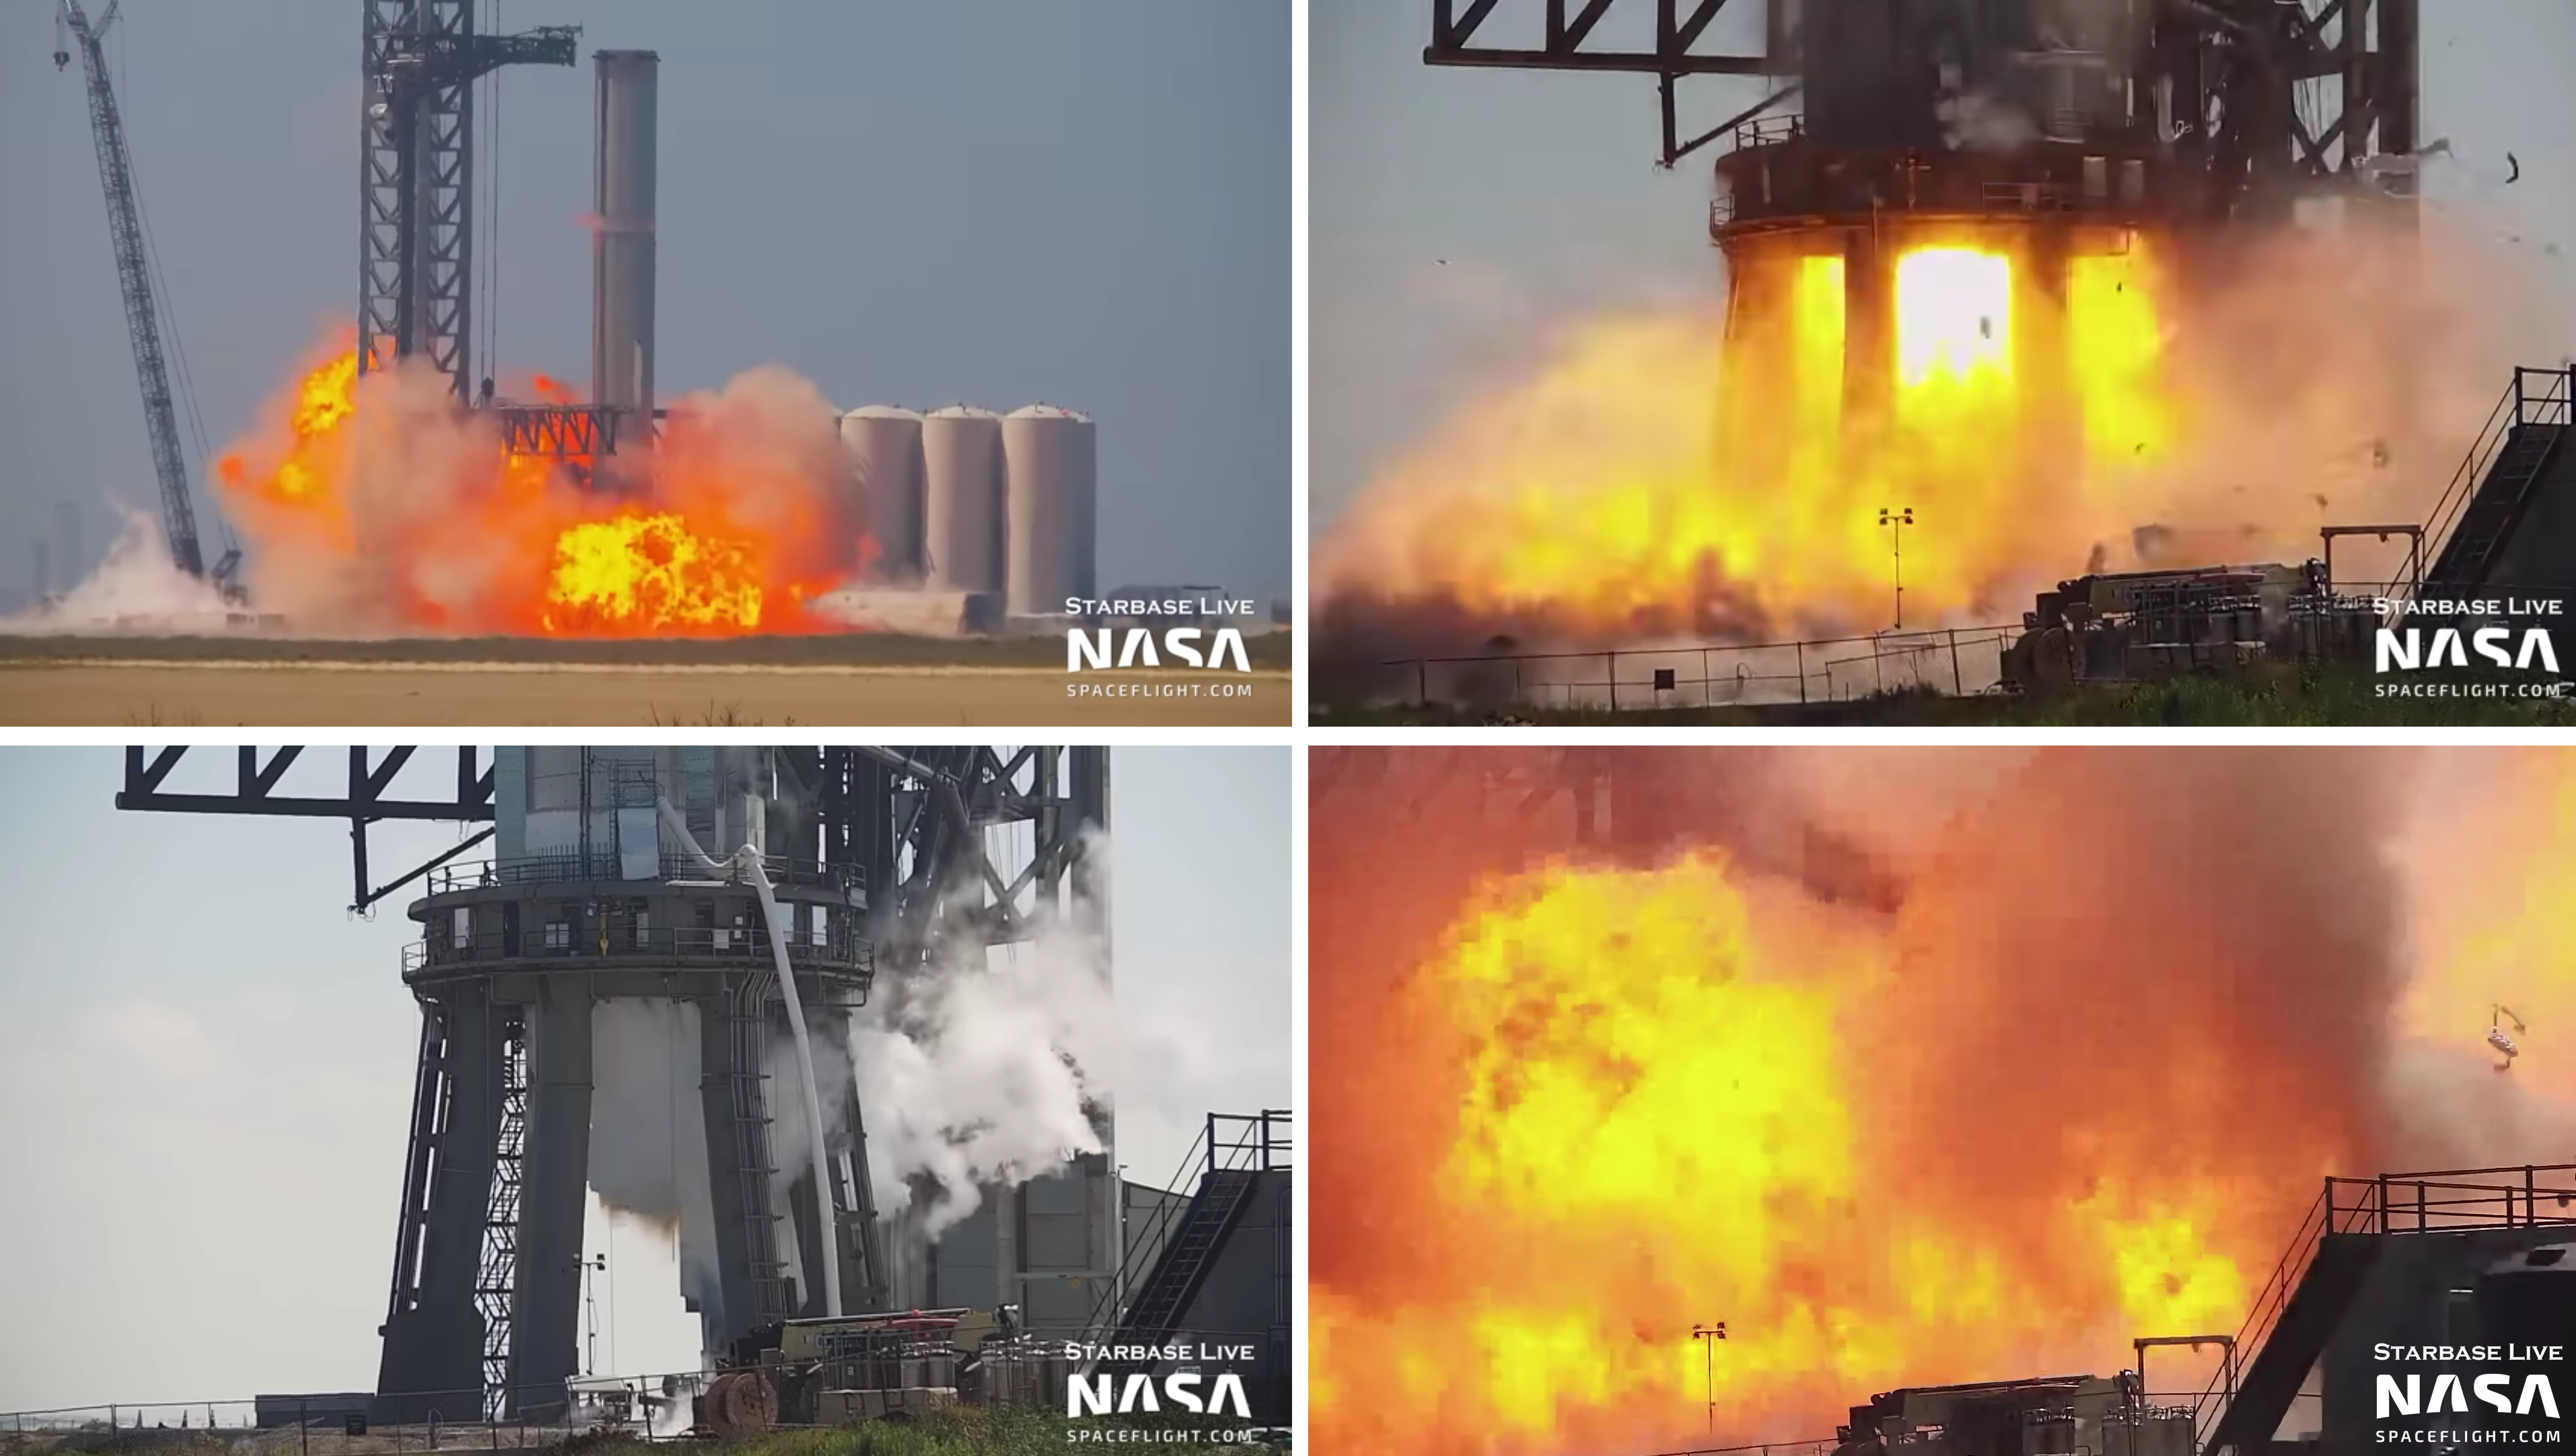 Dopalacz rakietowy Super Heavy Booster 7 dla SpaceX Starship eksploduje epicko podczas testów (wideo)